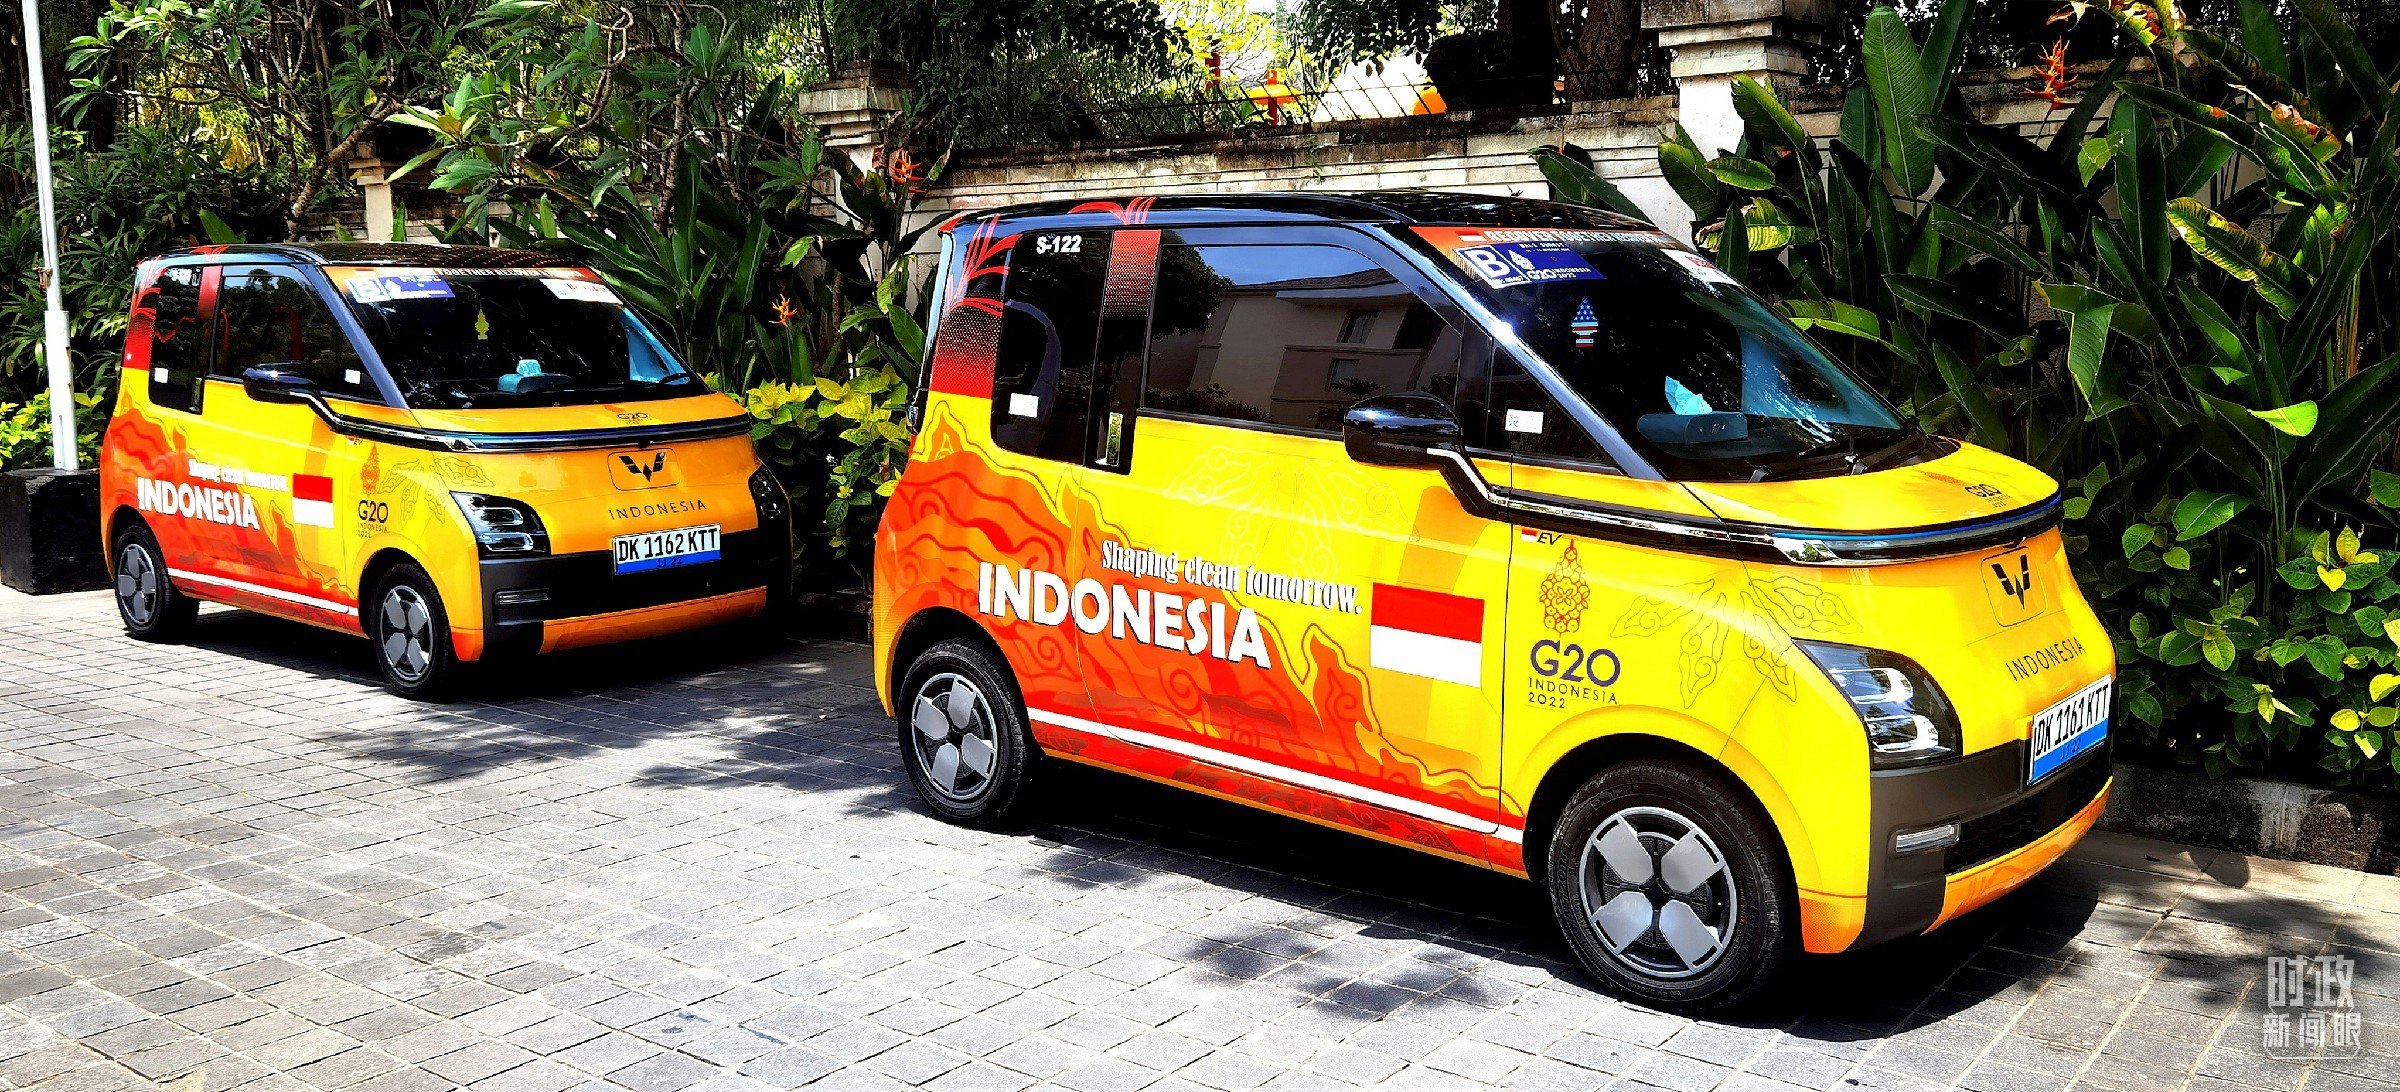 △巴厘岛峰会的新能源会议用车。（总台央视记者刘琦拍摄）